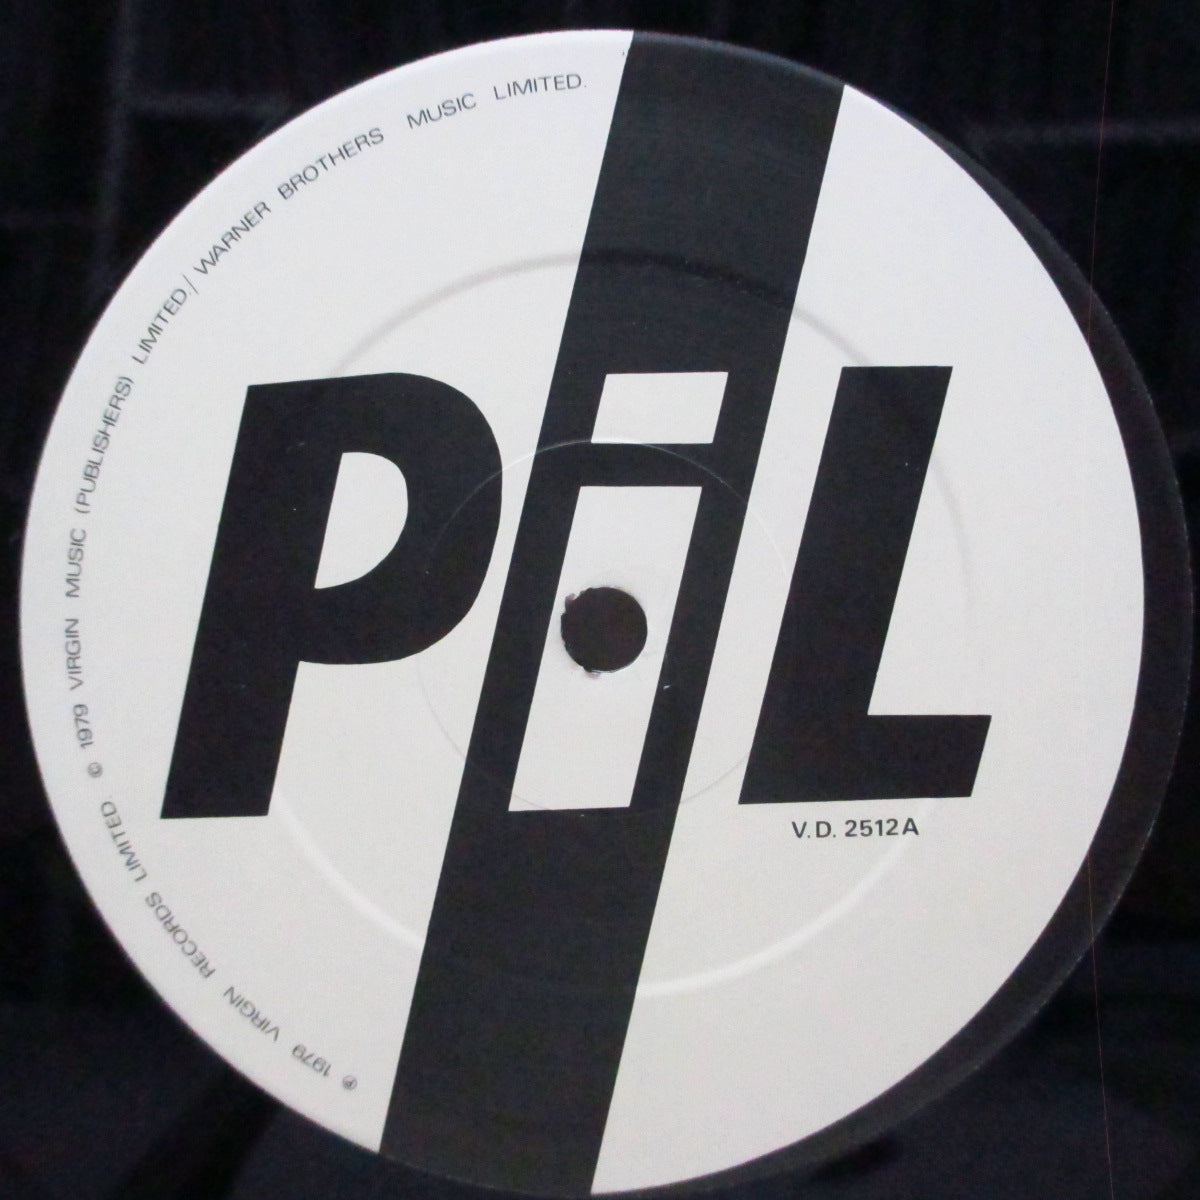 PUBLIC IMAGE LTD (パブリック・イメージ・リミテッド) - Second Edition (UK '80 セカンドプレス「ア